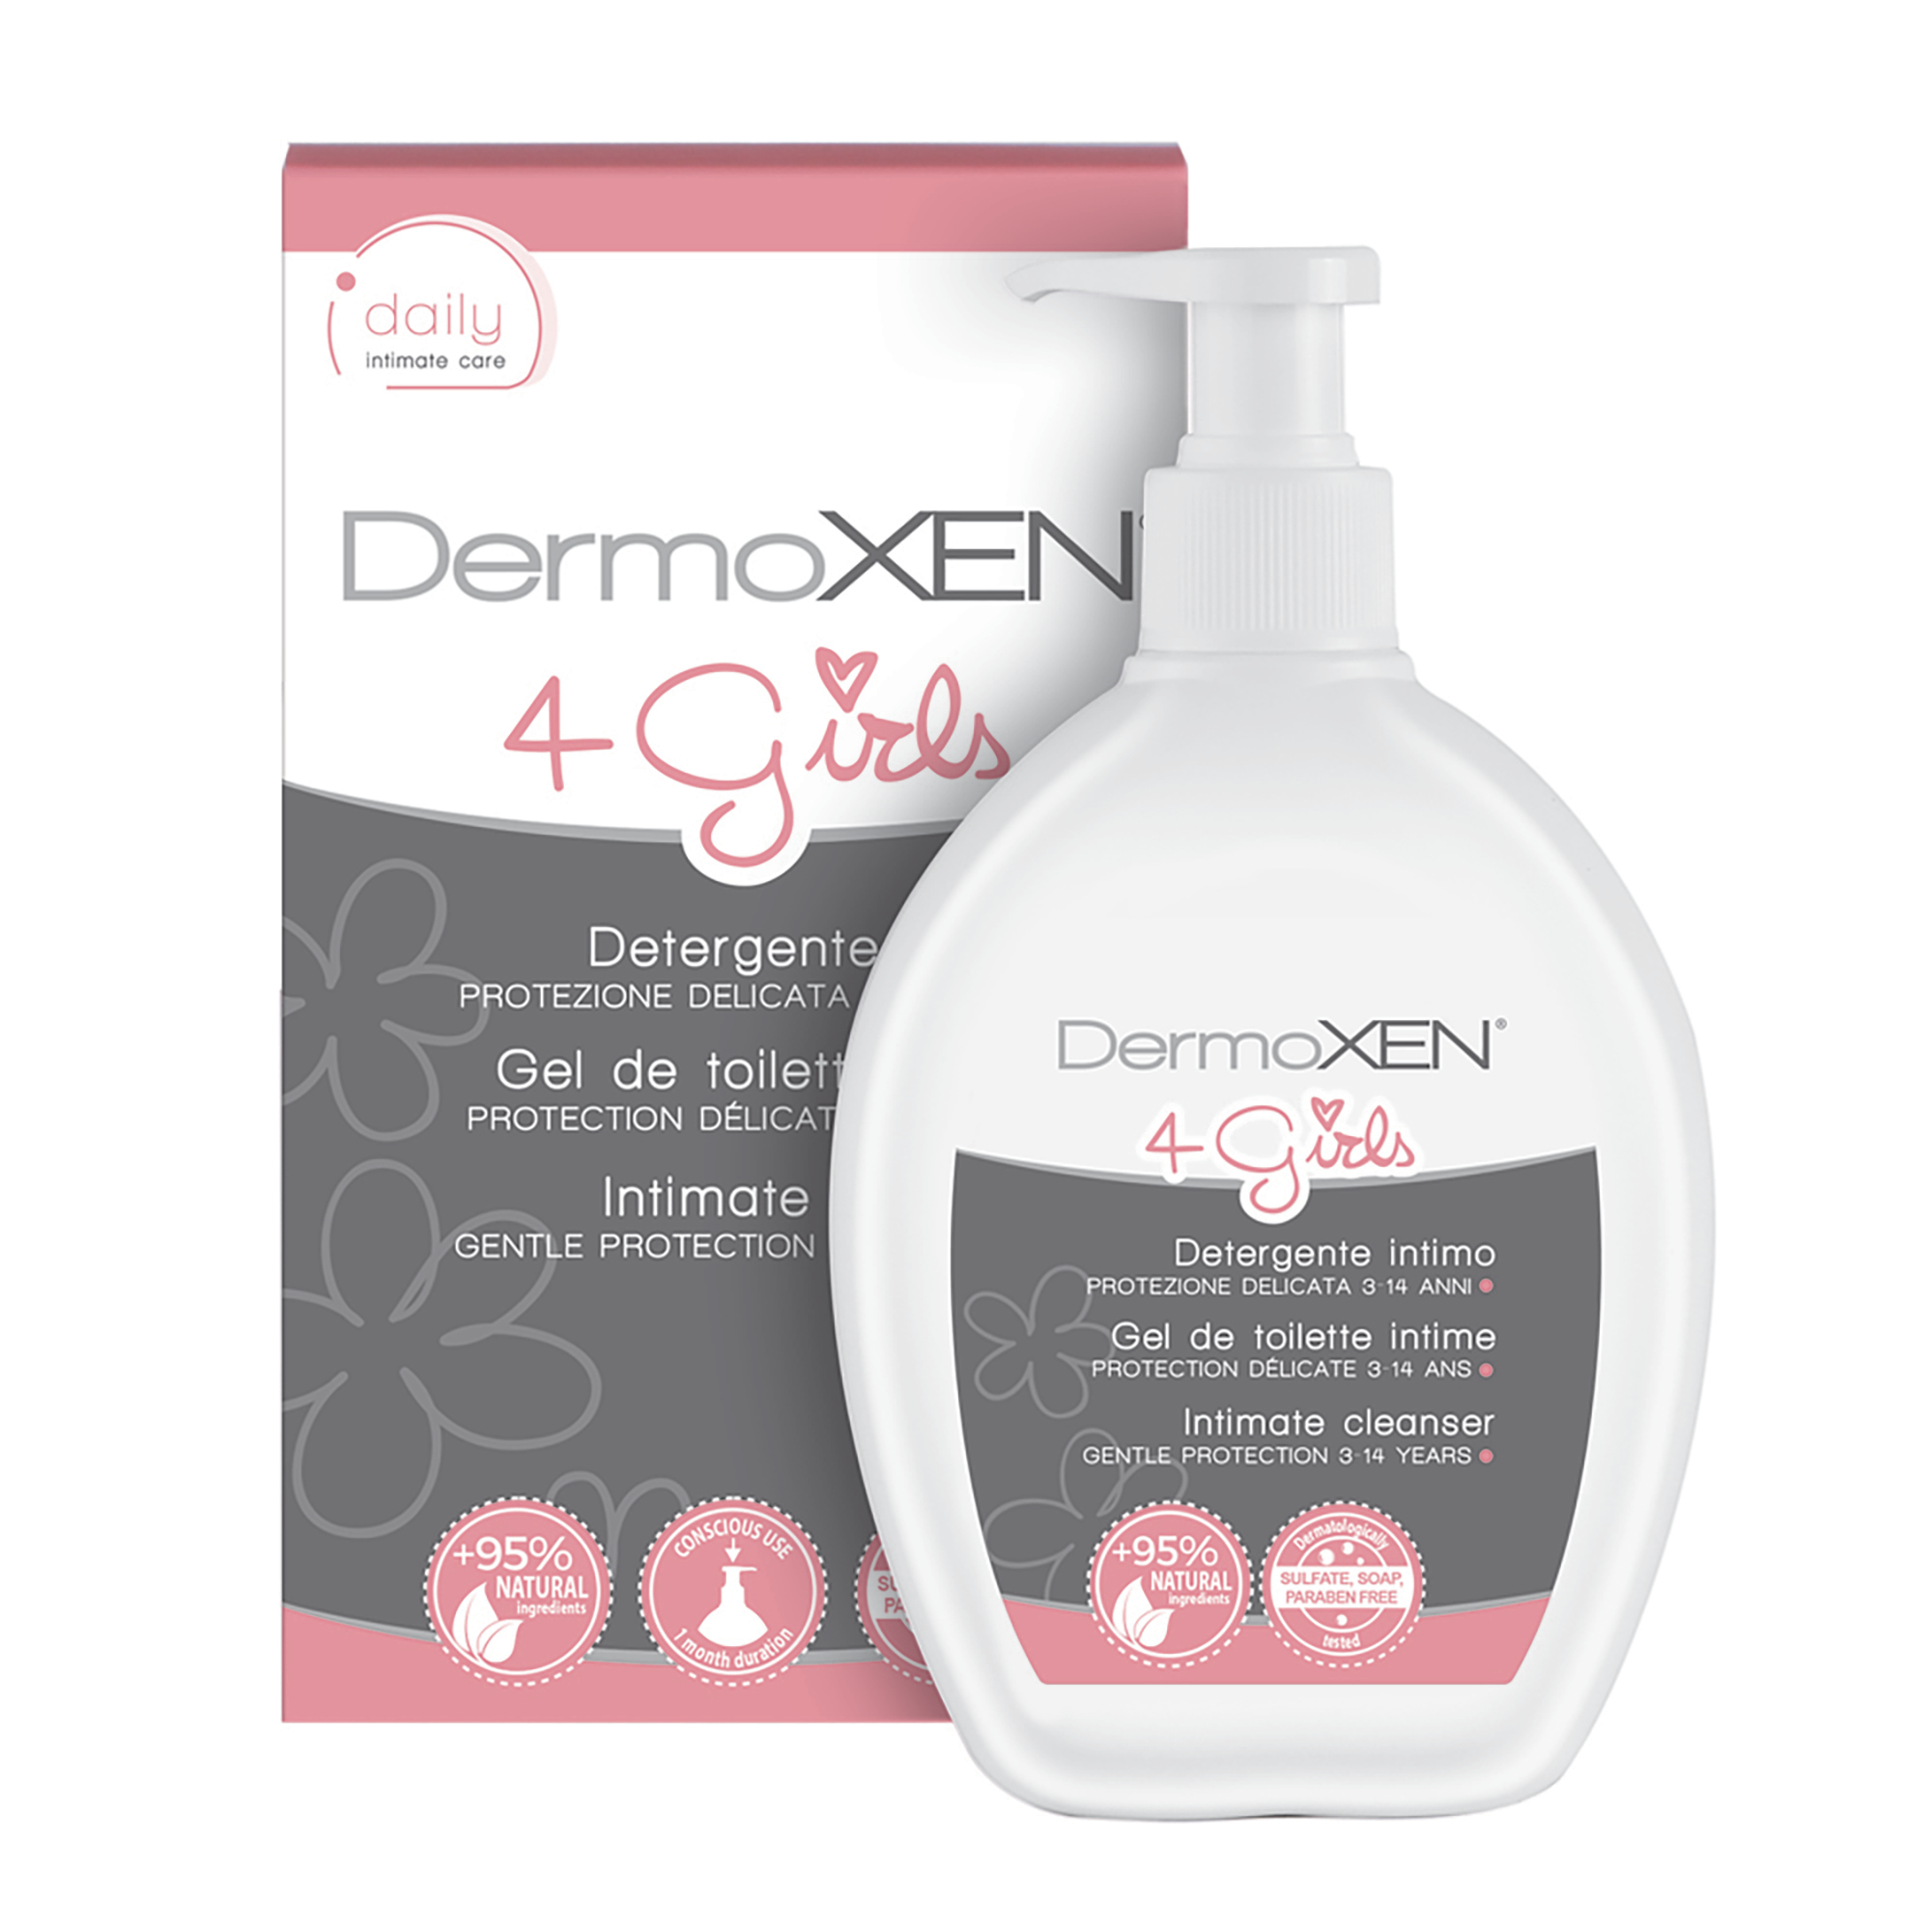 Dermoxen 4 Girlsintimate cleanser